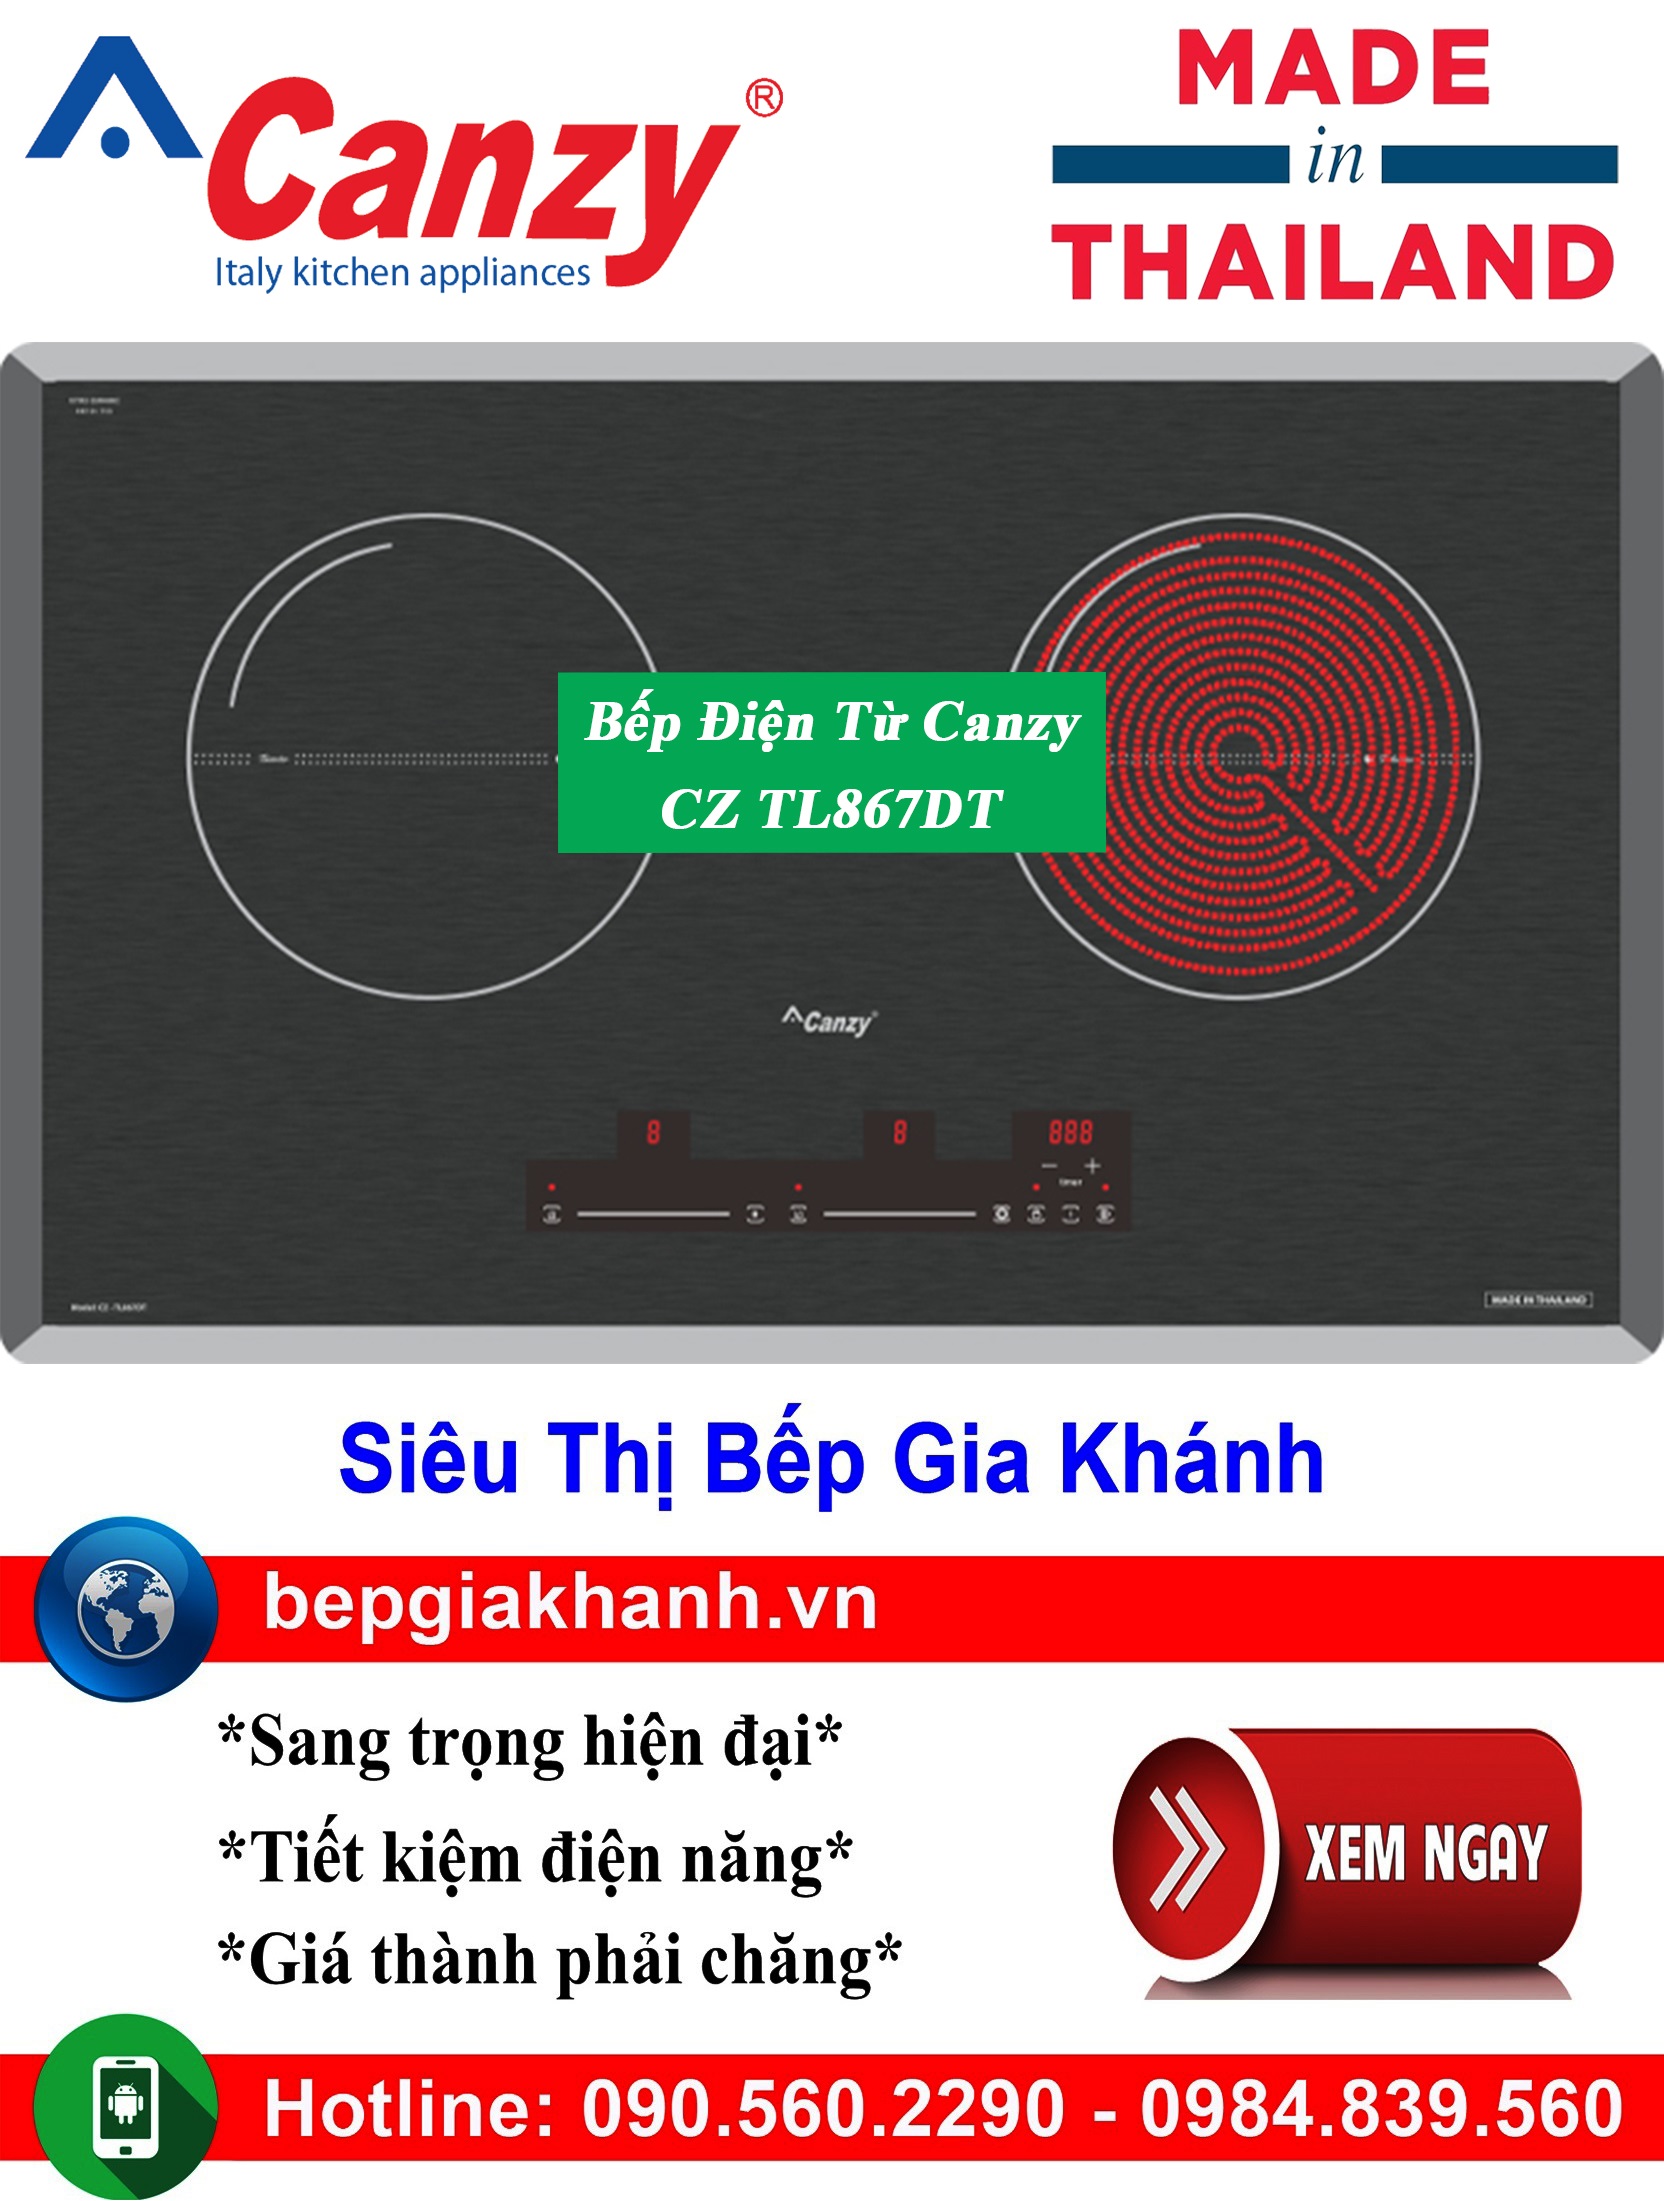 [HCM]Bếp điện từ Canzy CZ TL867DT nhập khẩu Thái Lan bếp điện từ bếp điện từ sunhouse bếp điện từ đôi bếp điện từ nội địa nhật bếp điện từ giá rẻ bep dien tu bep dien tu gia re